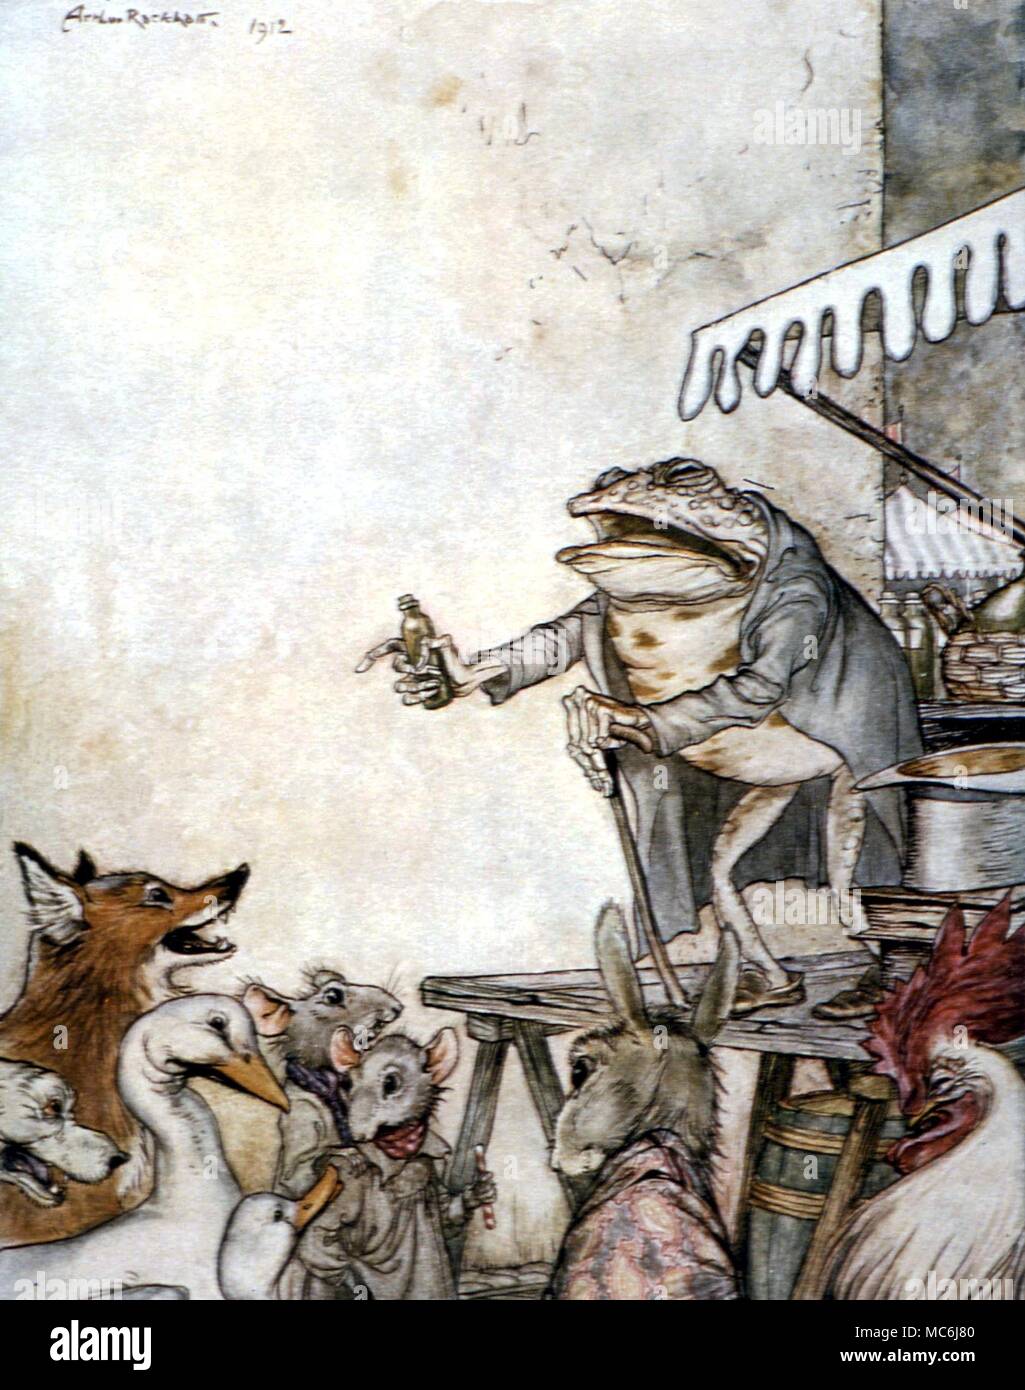 Contes - QUACK GRENOUILLE. Illustration par Arthur Rackham de l'histoire de la grenouille, du charlatan Fables d'Ésope, 1908 Banque D'Images